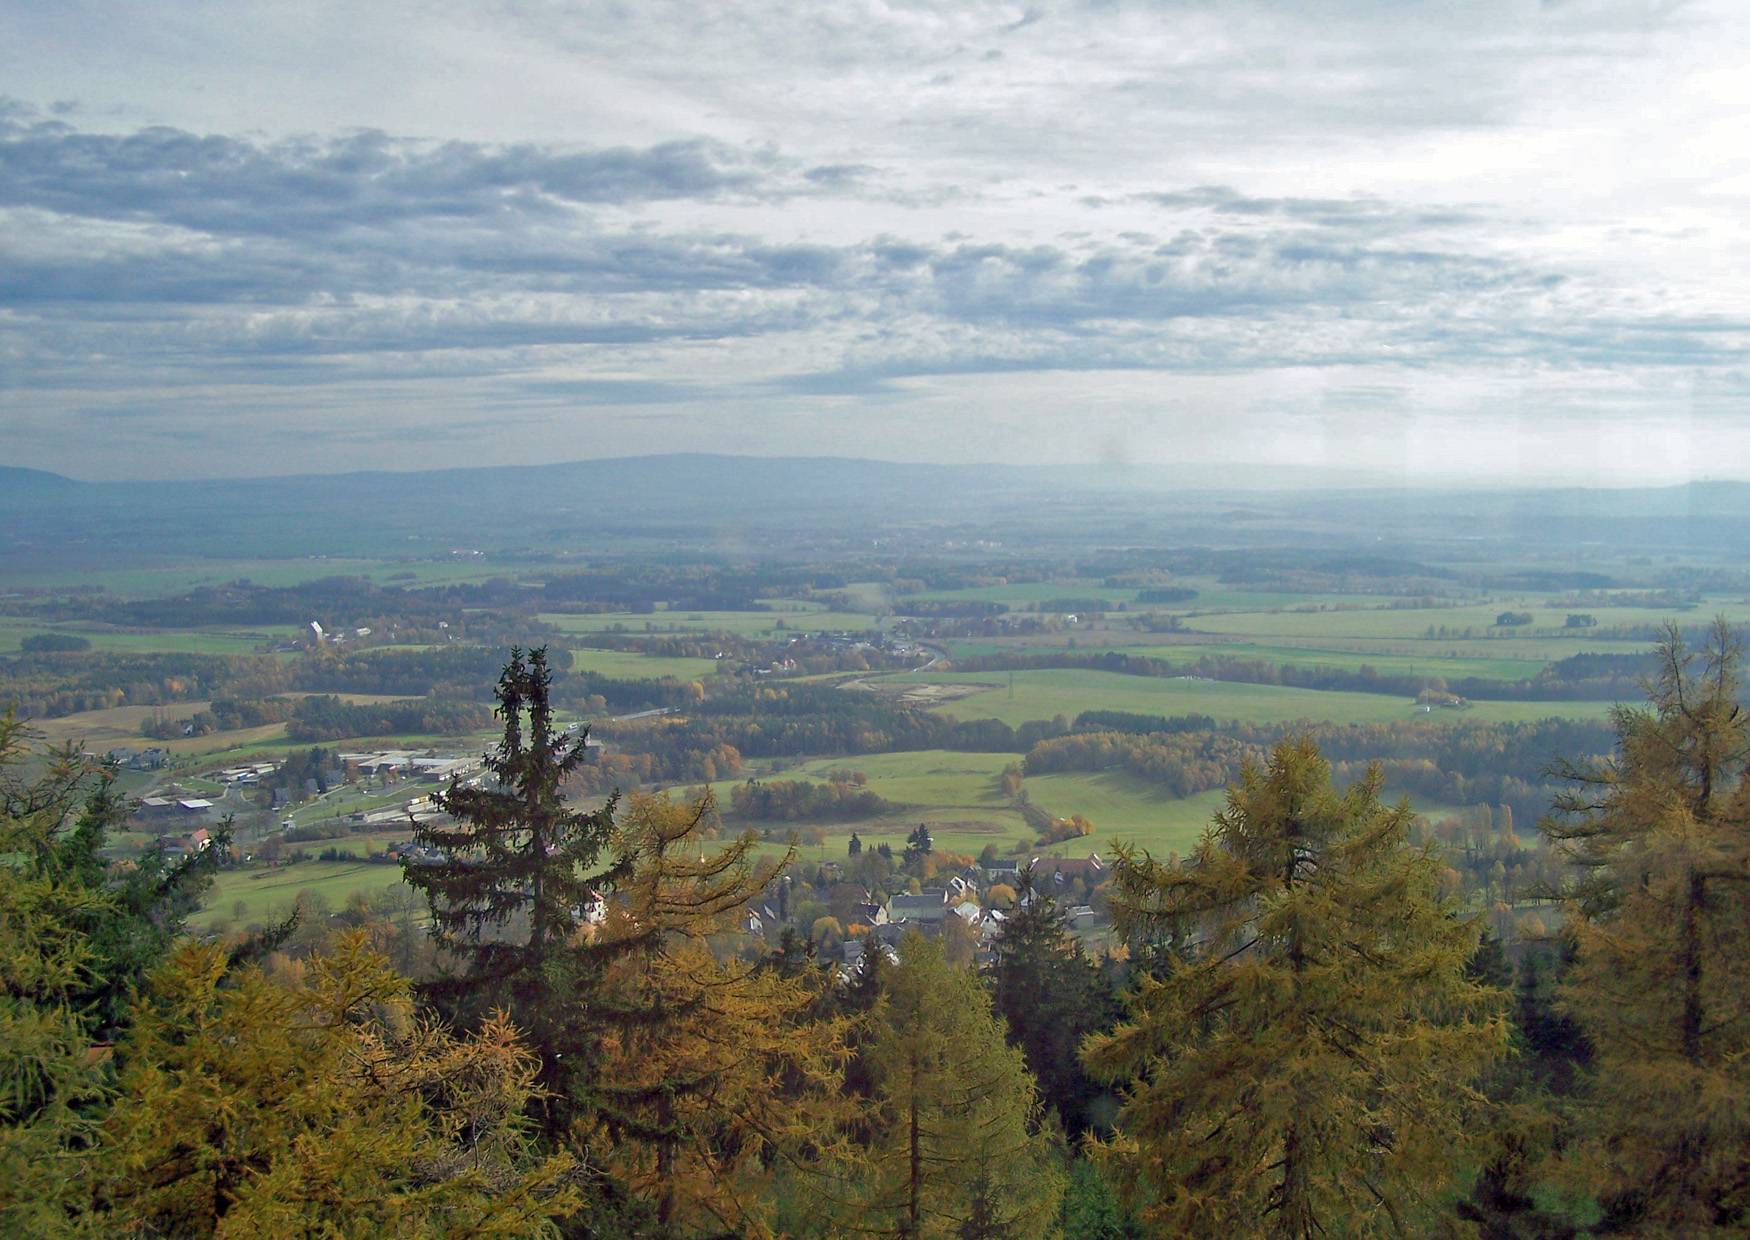 Aussicht vom Turm auf dem Kapellenberg nach Süden